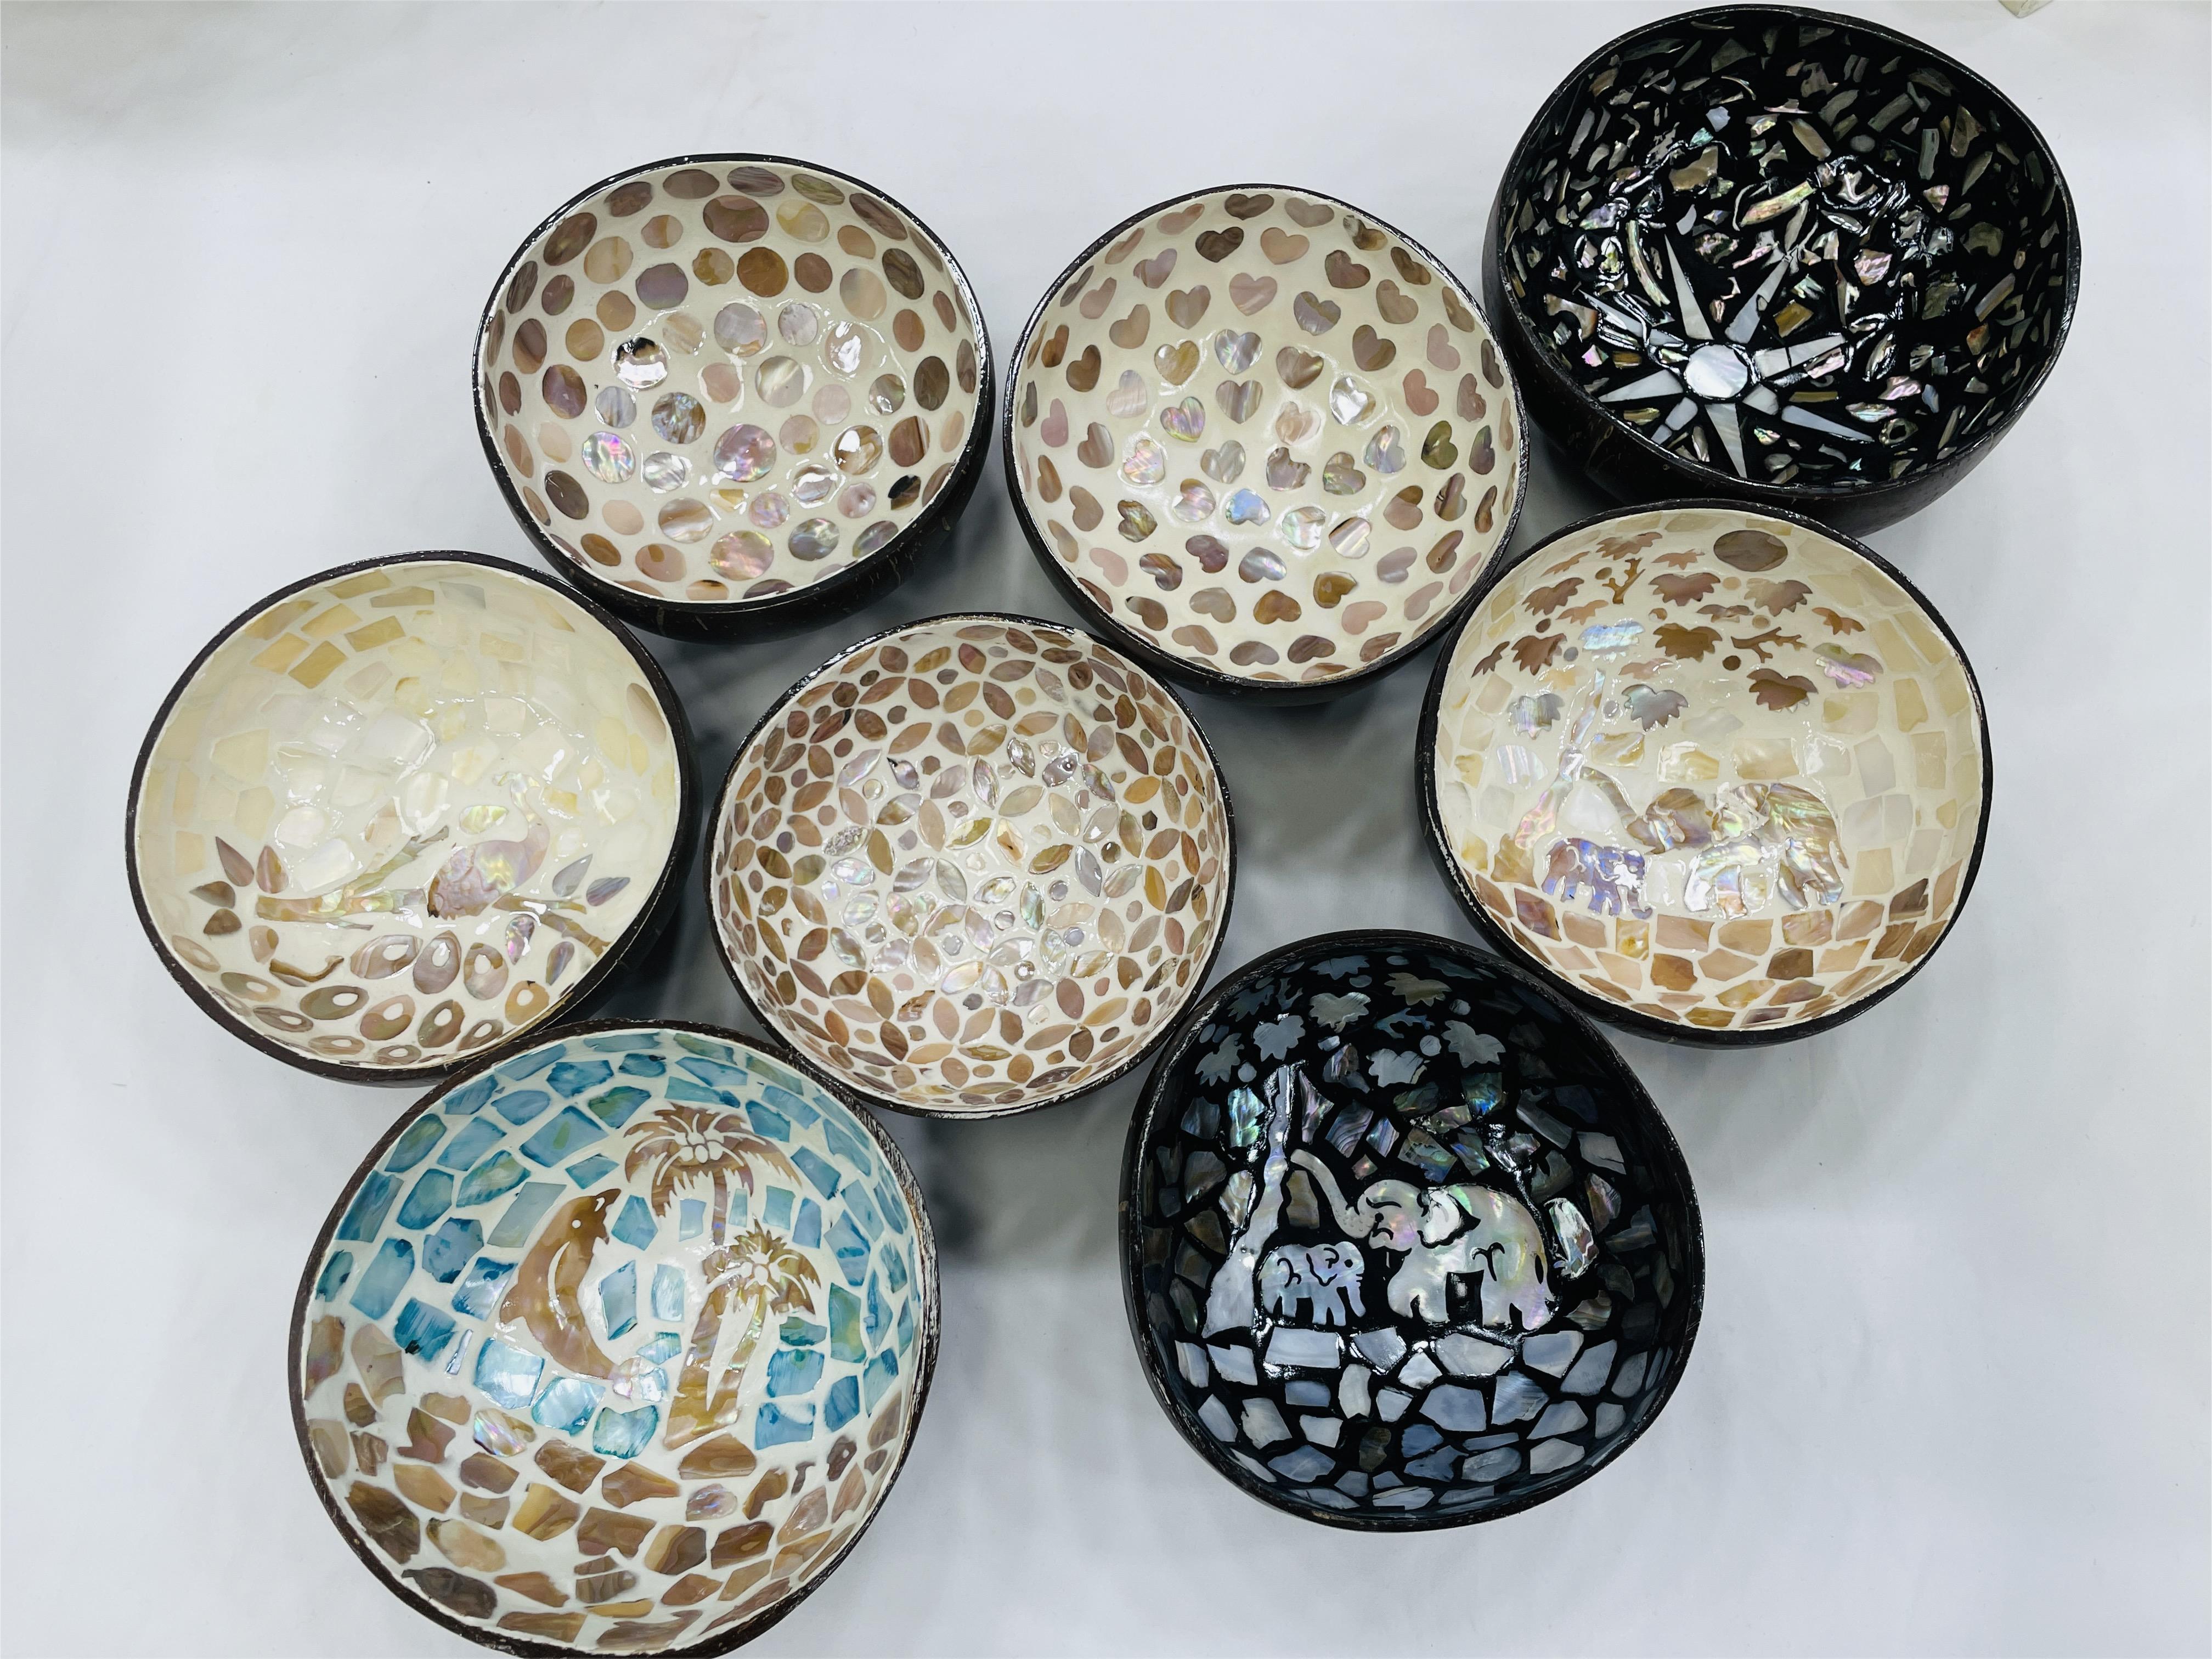 东南亚天然贝壳镶嵌椰子碗玄关钥匙收纳碗日常送礼家居日用收纳